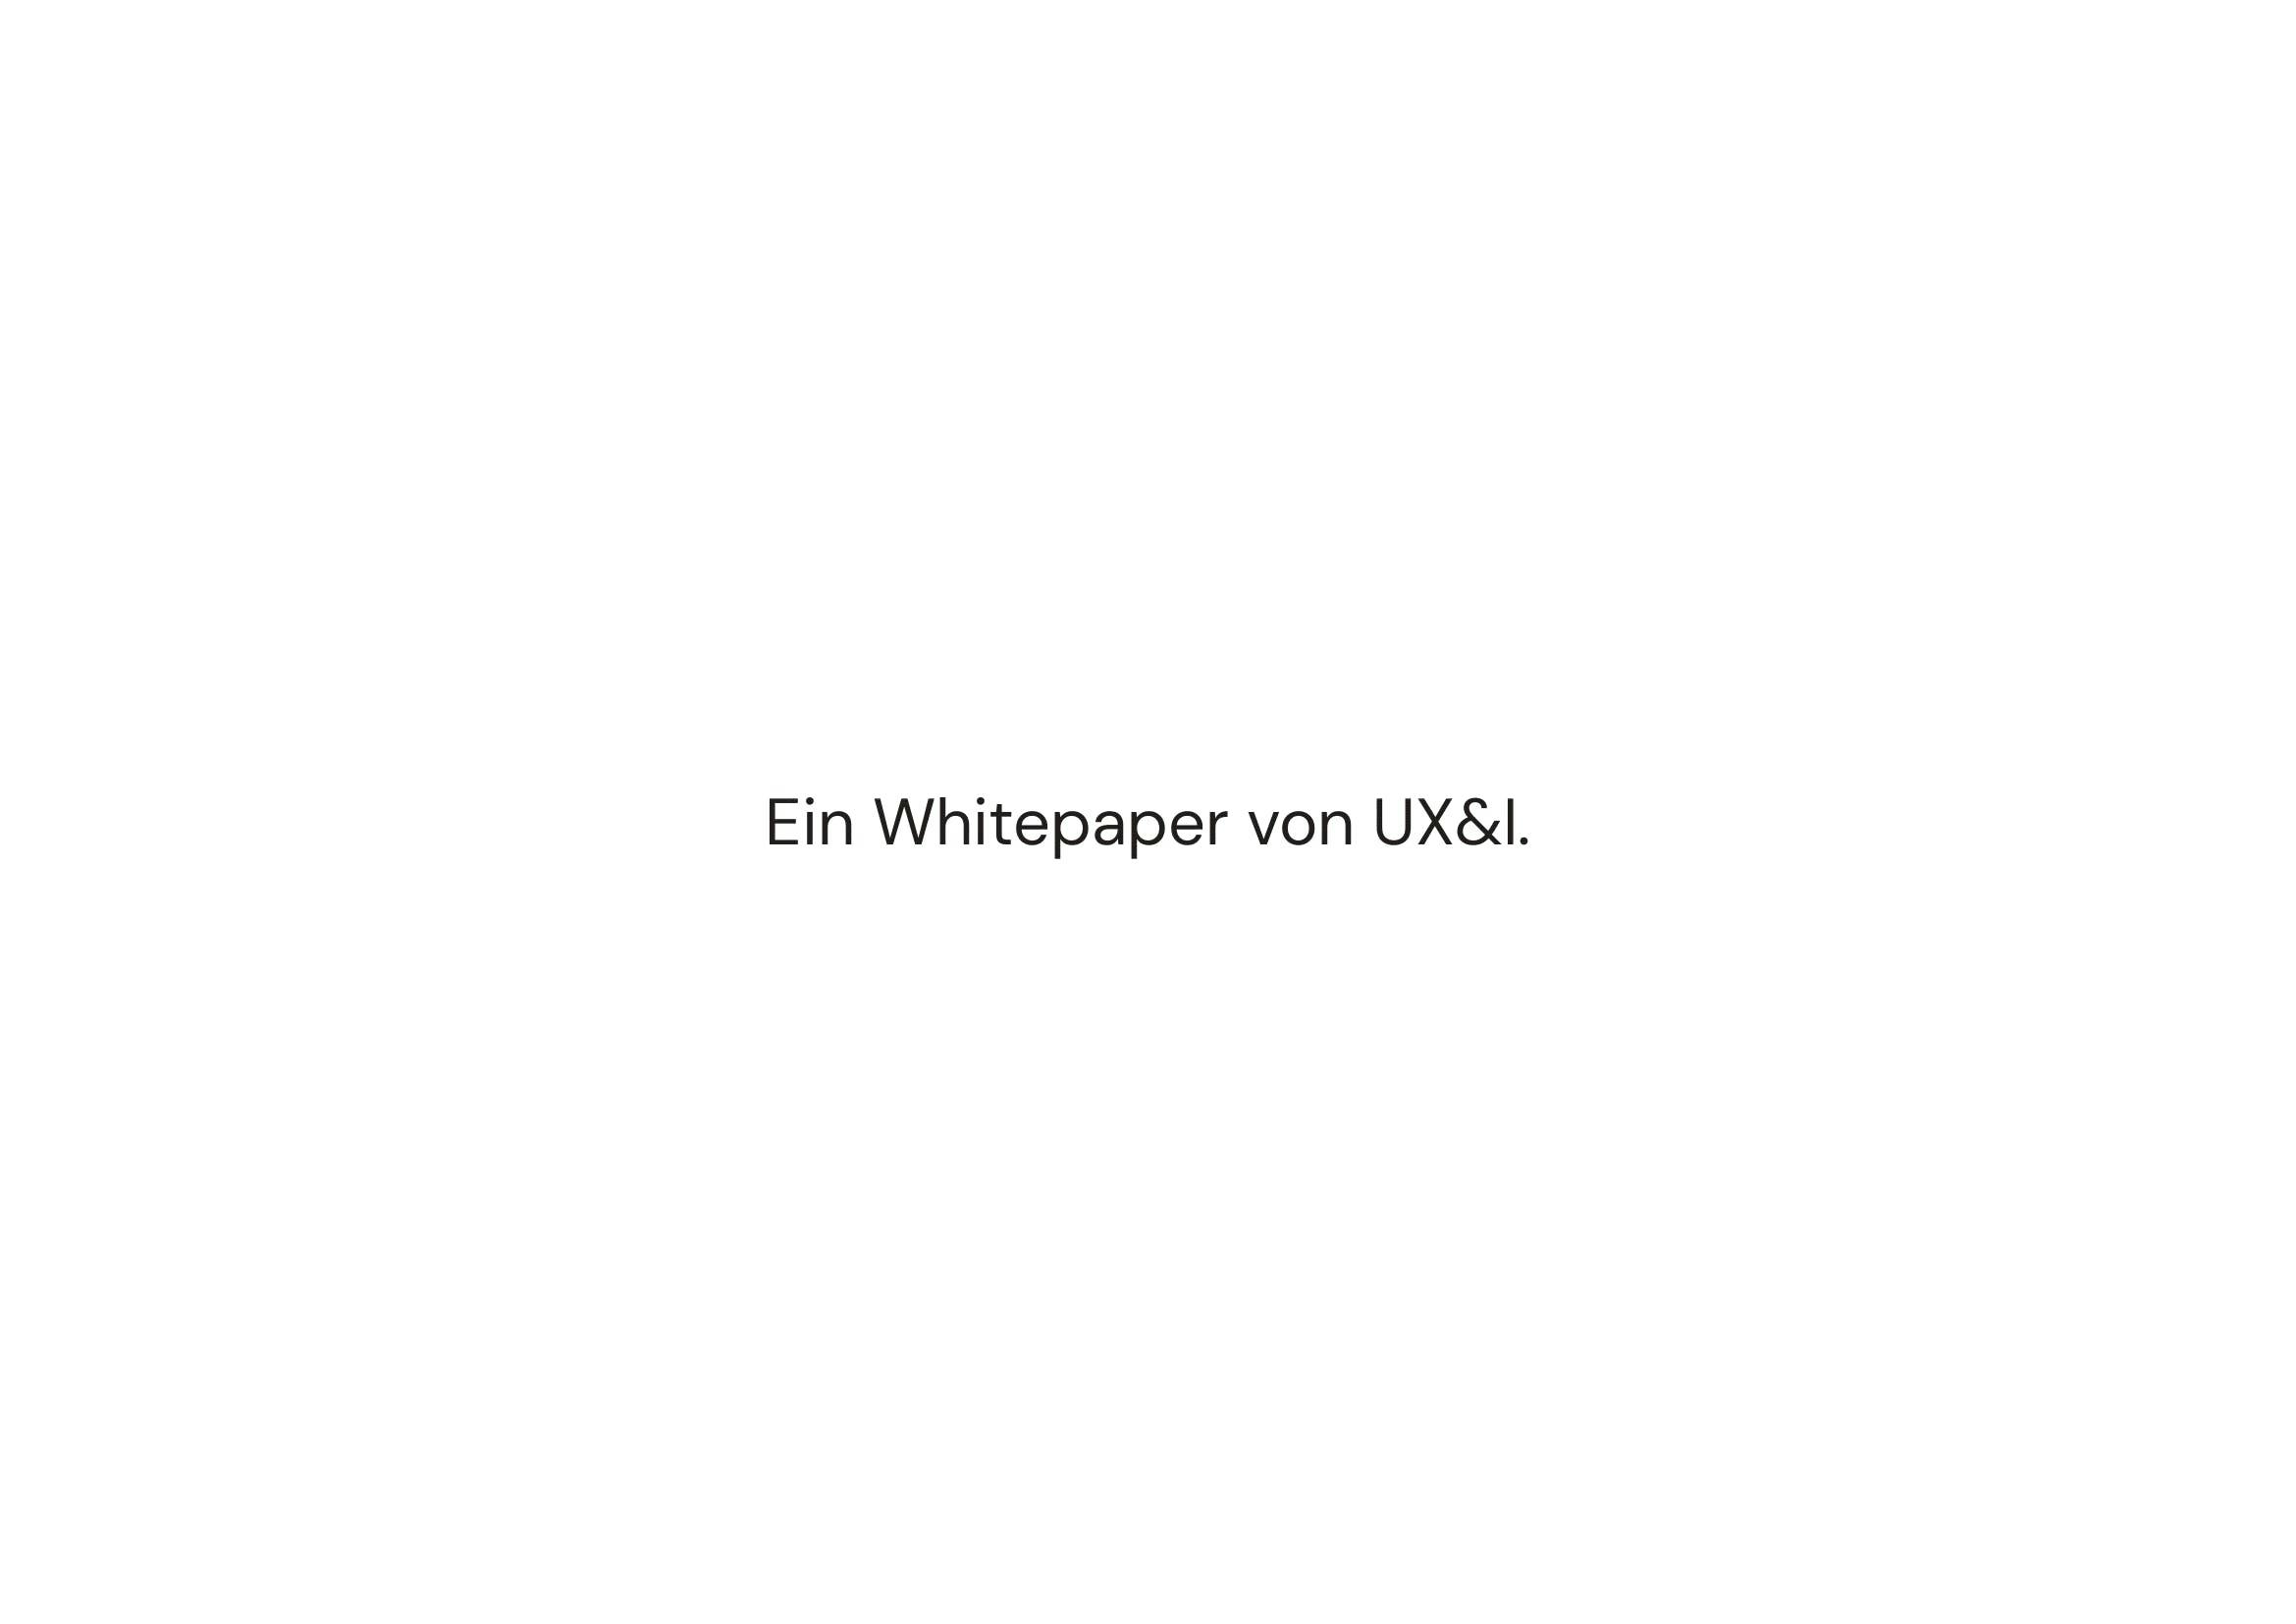 User Experience Whitepaper zum Thema Deep Tech trifft Nutzerzentrierung